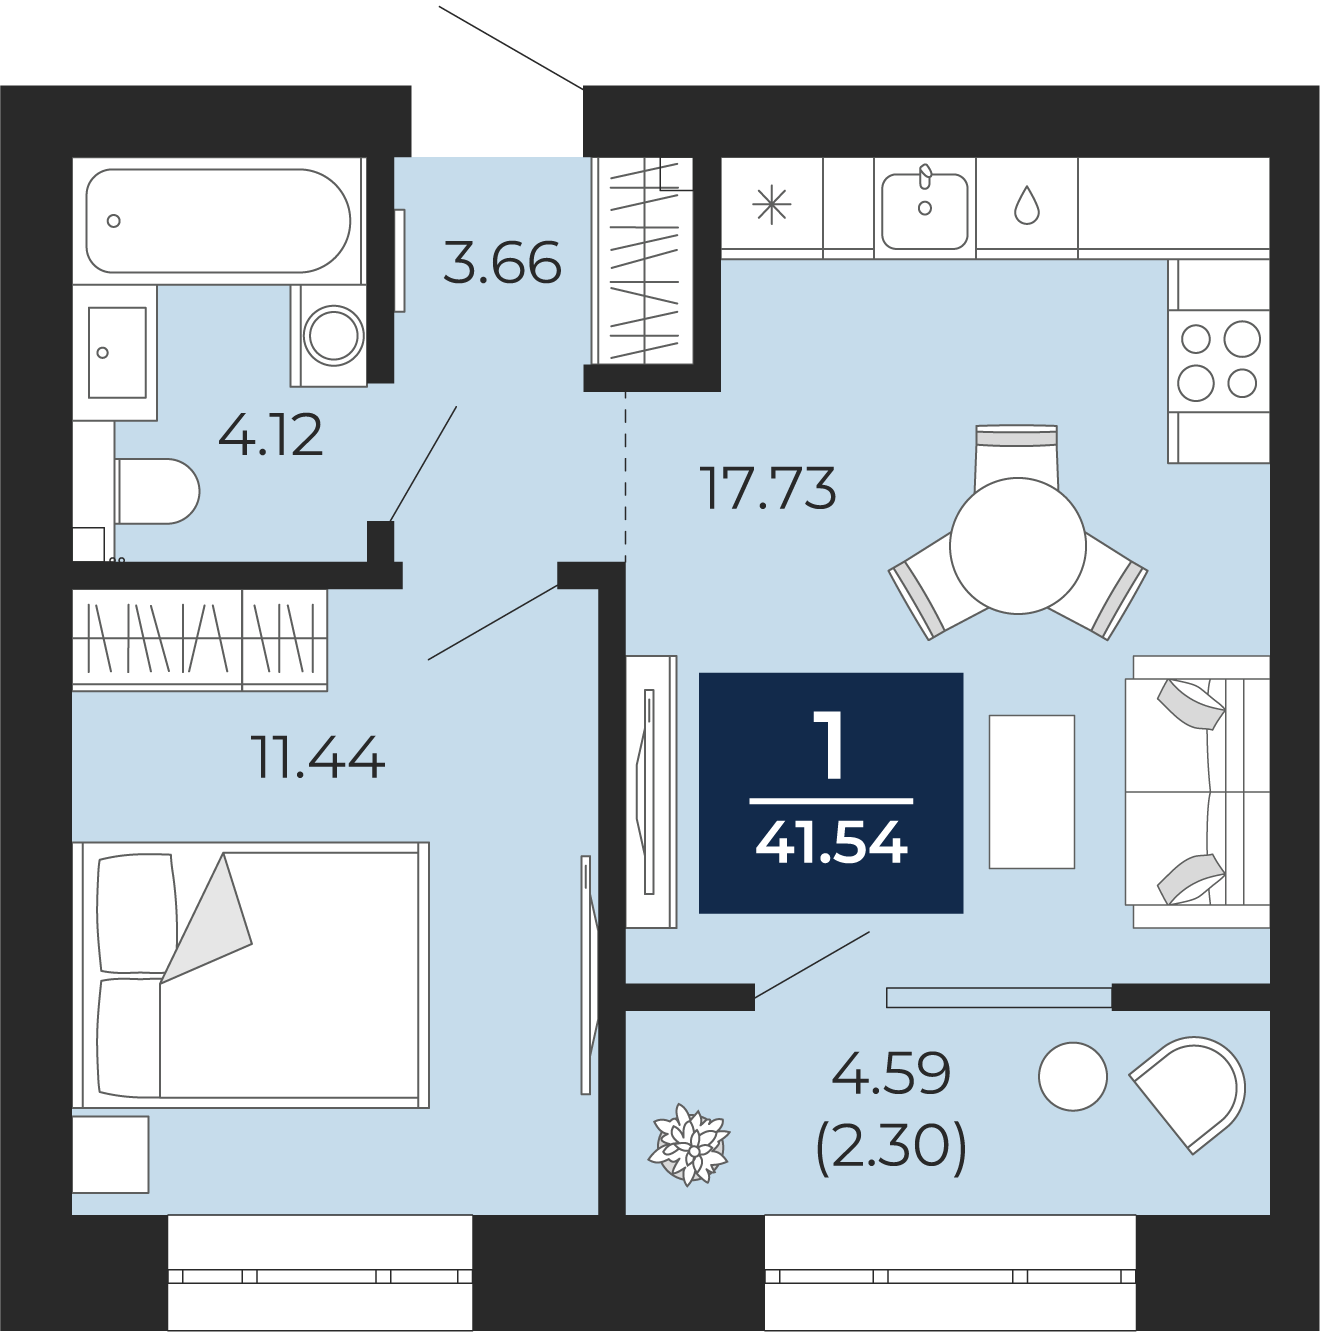 Квартира № 105, 1-комнатная, 41.54 кв. м, 5 этаж